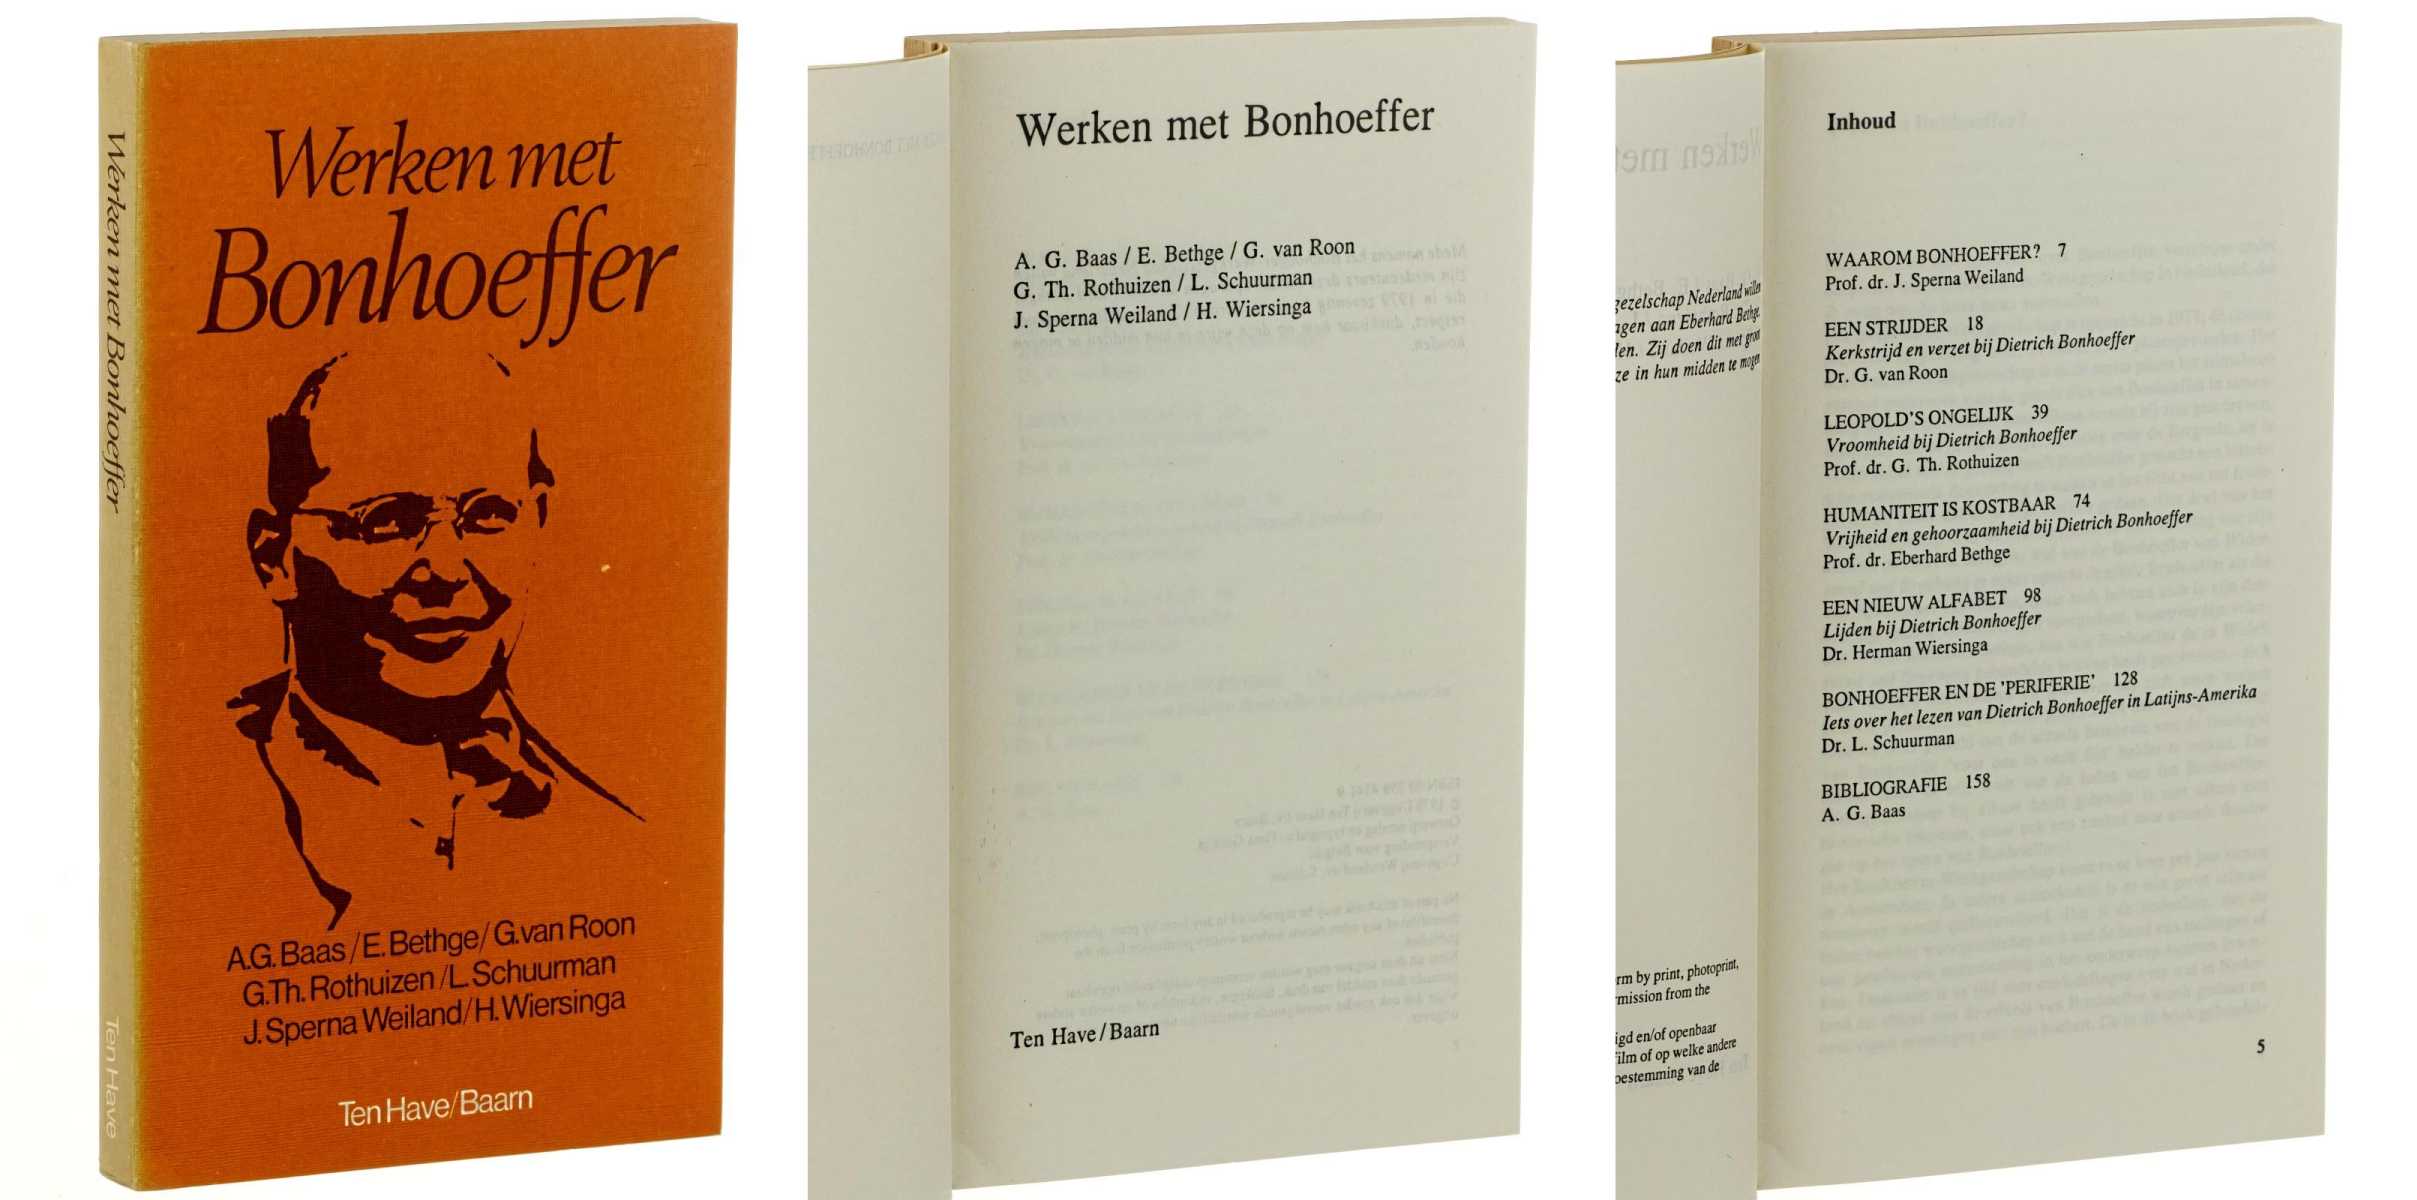 Baas, A,.G./ E. Bethge/ G. van Roon/ G.Th. Rothuizen/  L. Schuurman/ J. Sperna Weiland/ H. Wiersinga.  Werken met Bonhoeffer. 